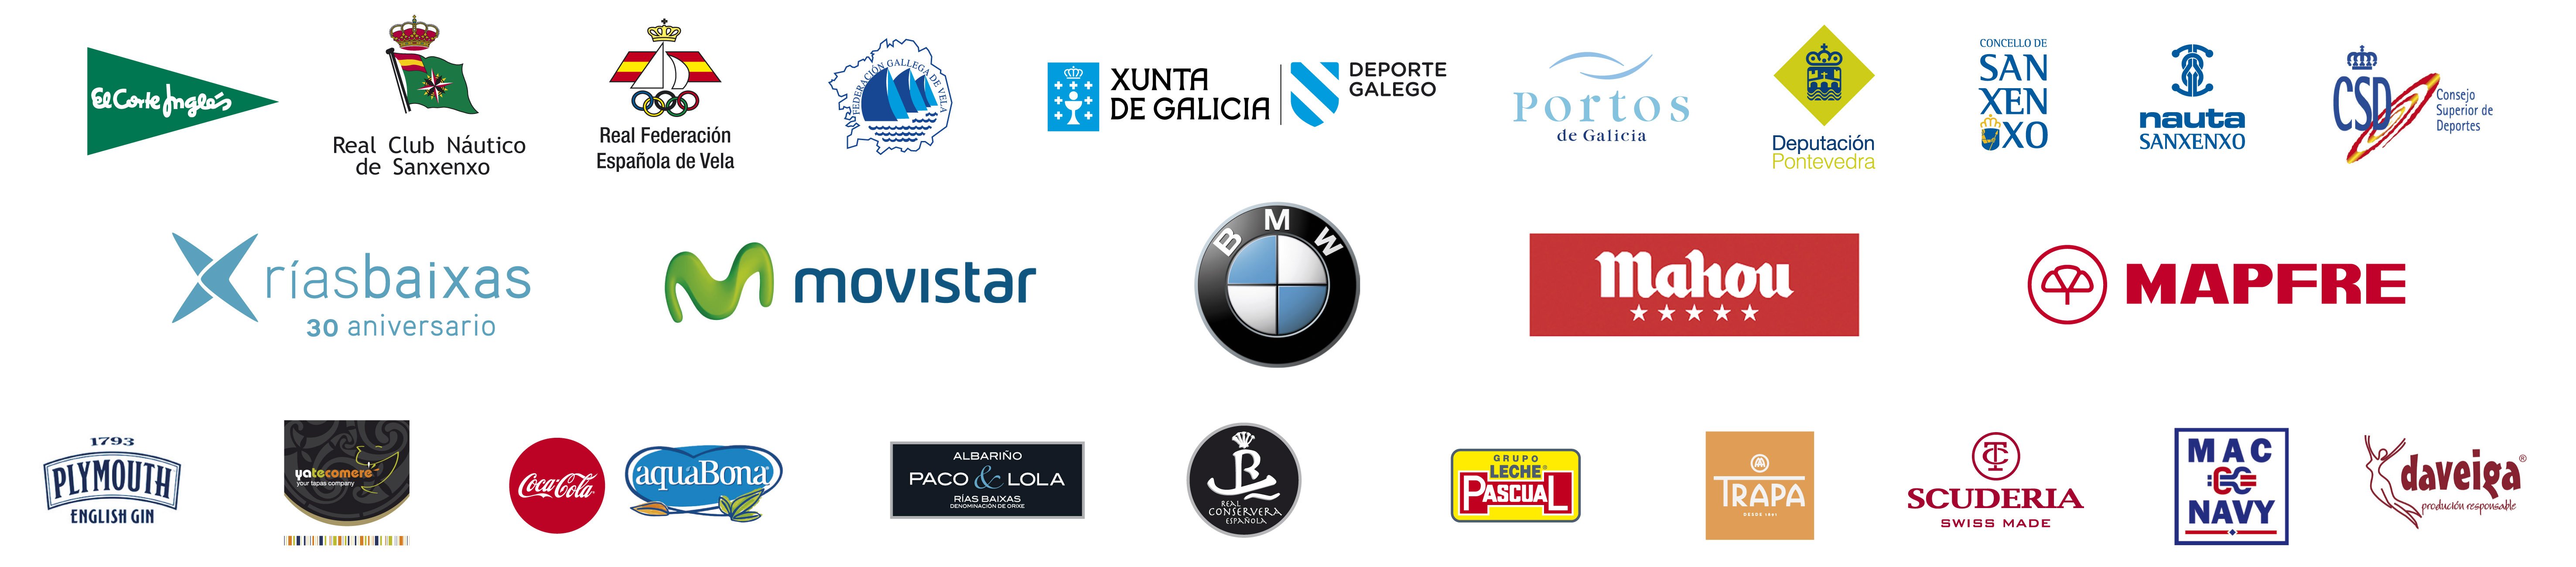 Patrocinadores Regata Rey Juan Carlos 2015